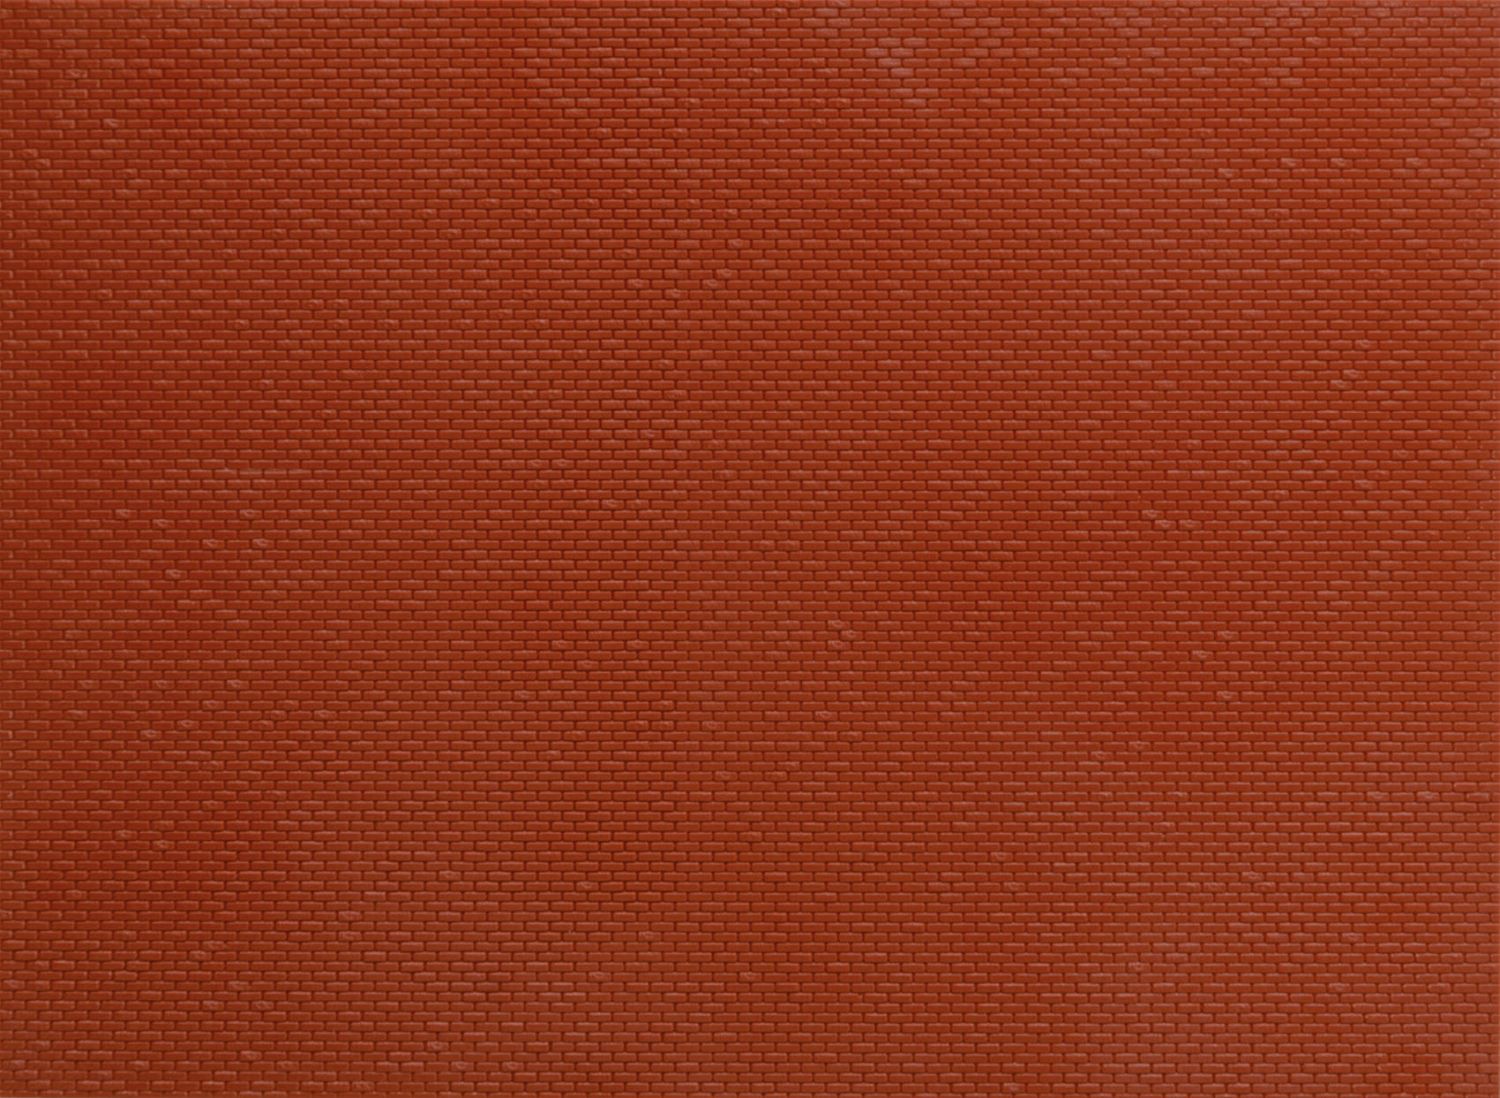 Vollmer 47349 - Kunststoff-Mauerplatte 'Klinker', 14,9 x 10,9 cm